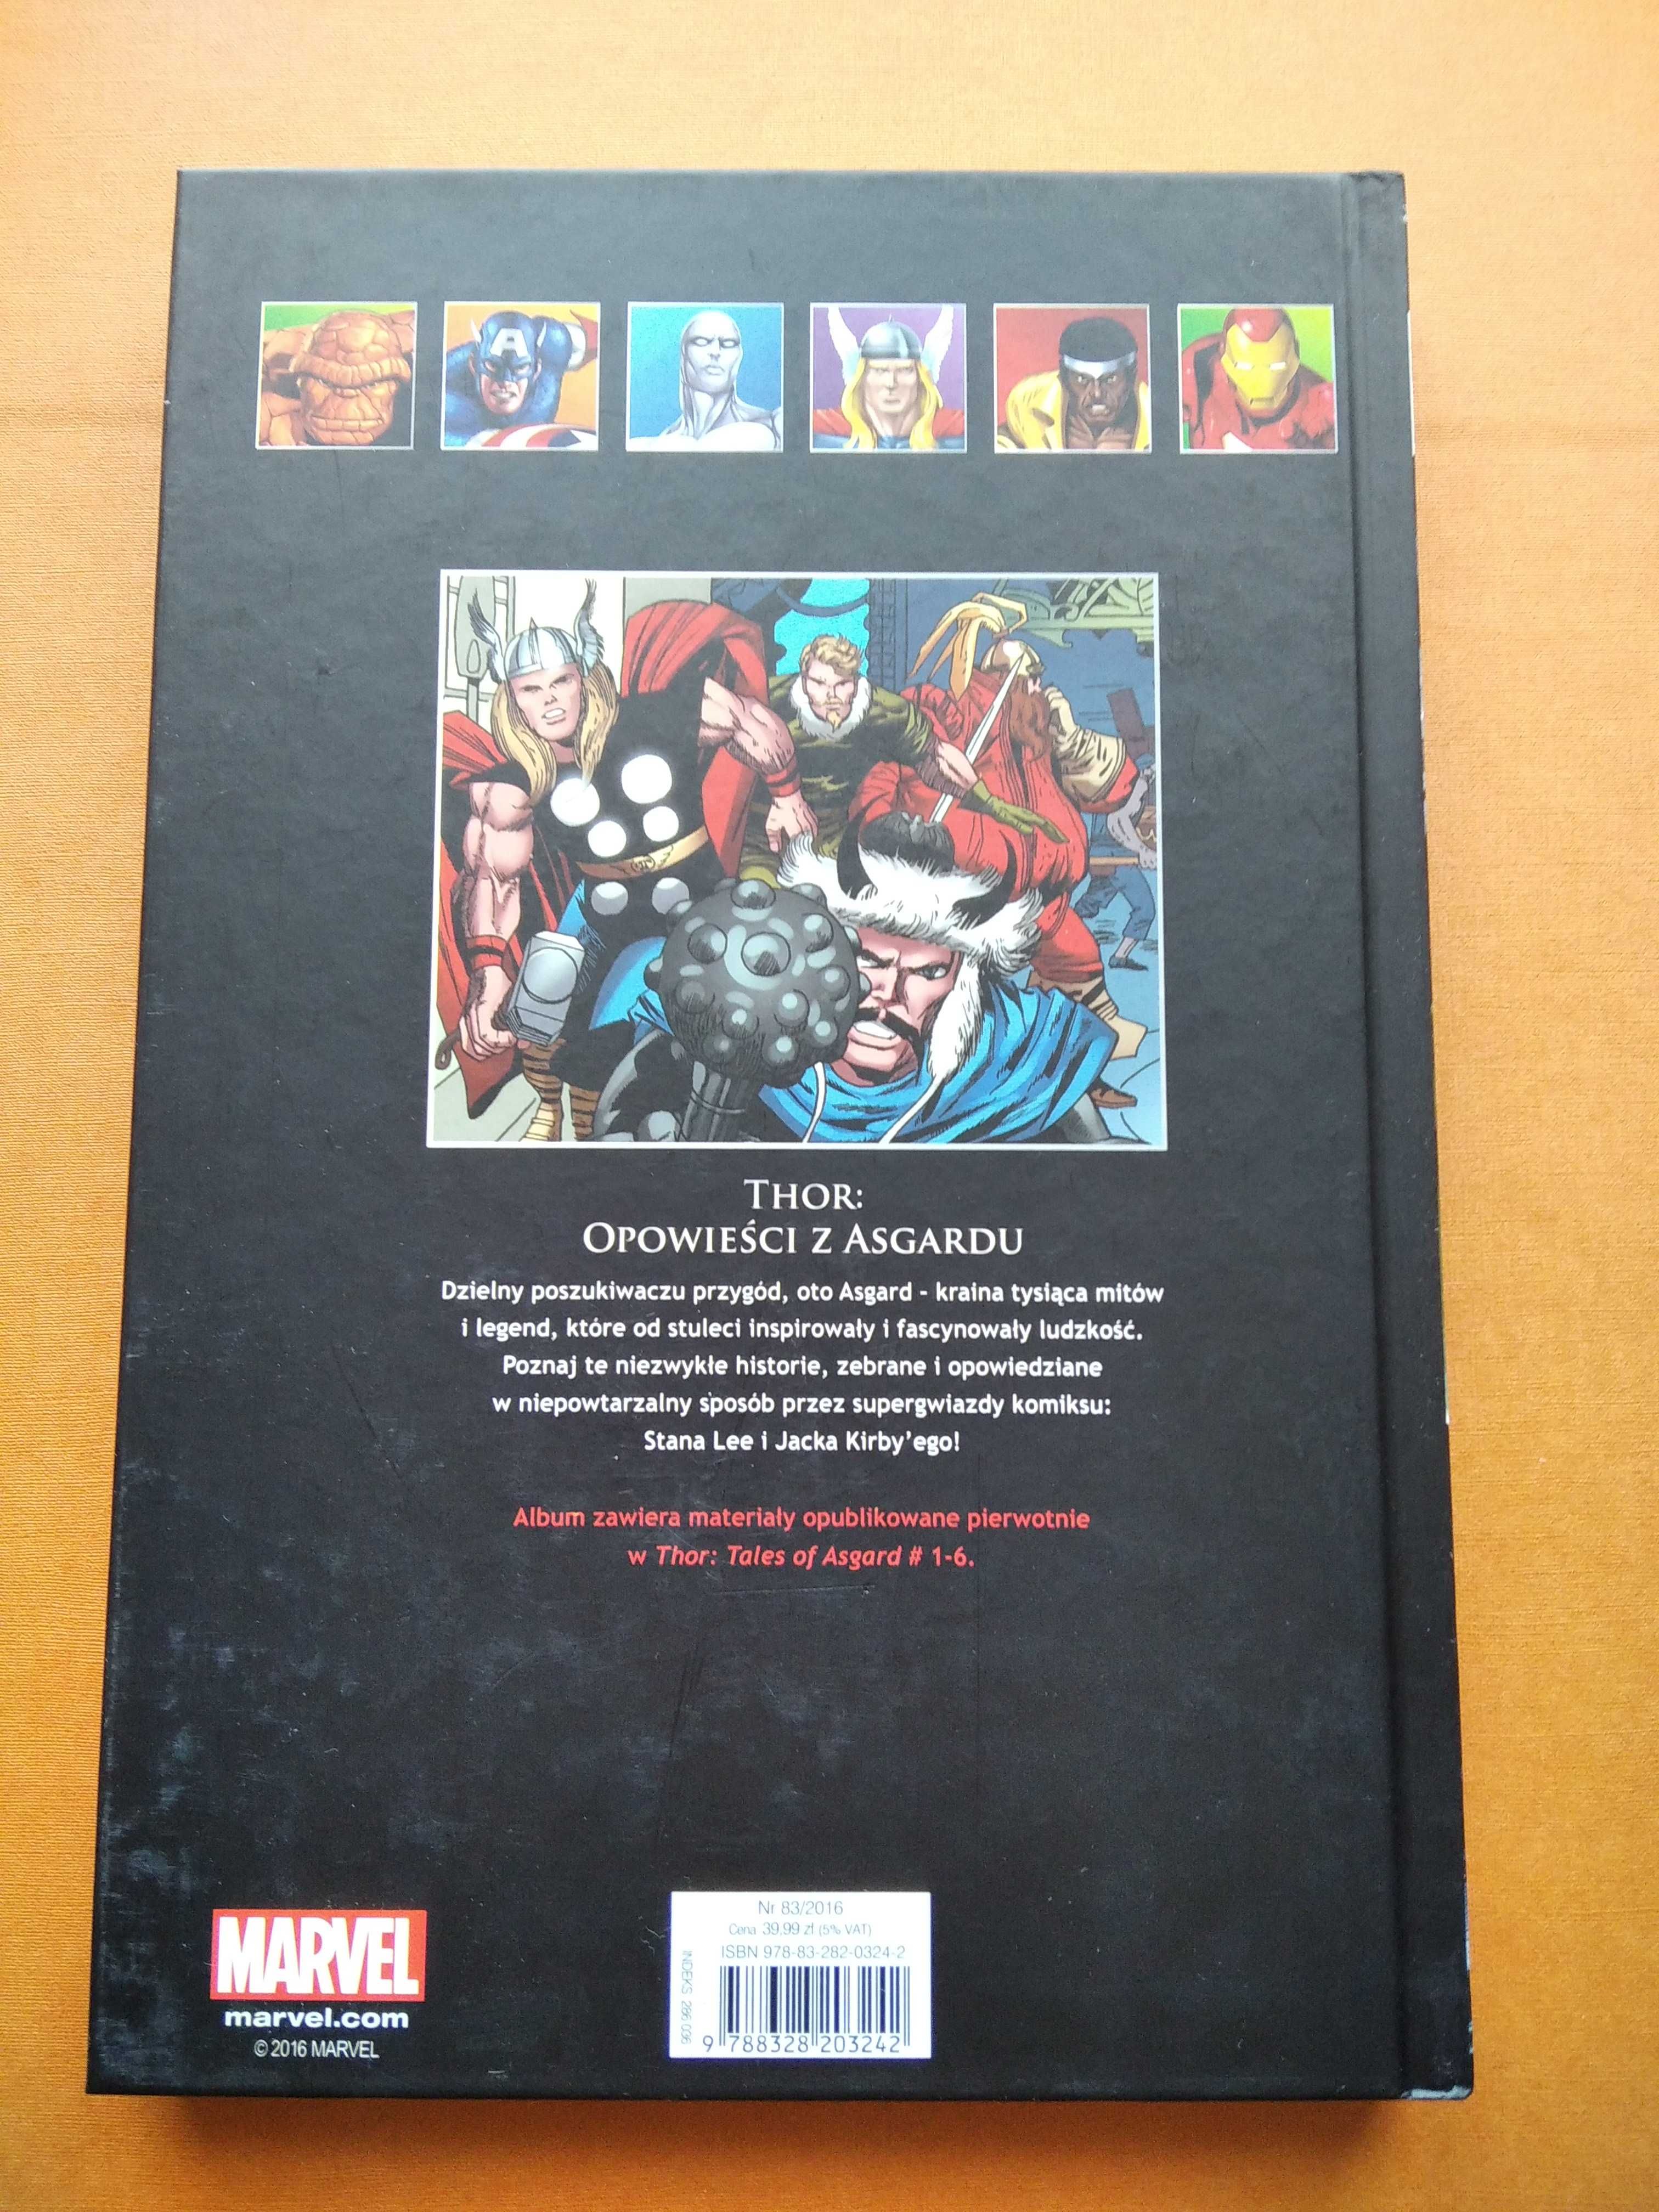 Wielka Kolekcja Komiksów Marvela WKKM 83 ThorOpowieści z Asgardu